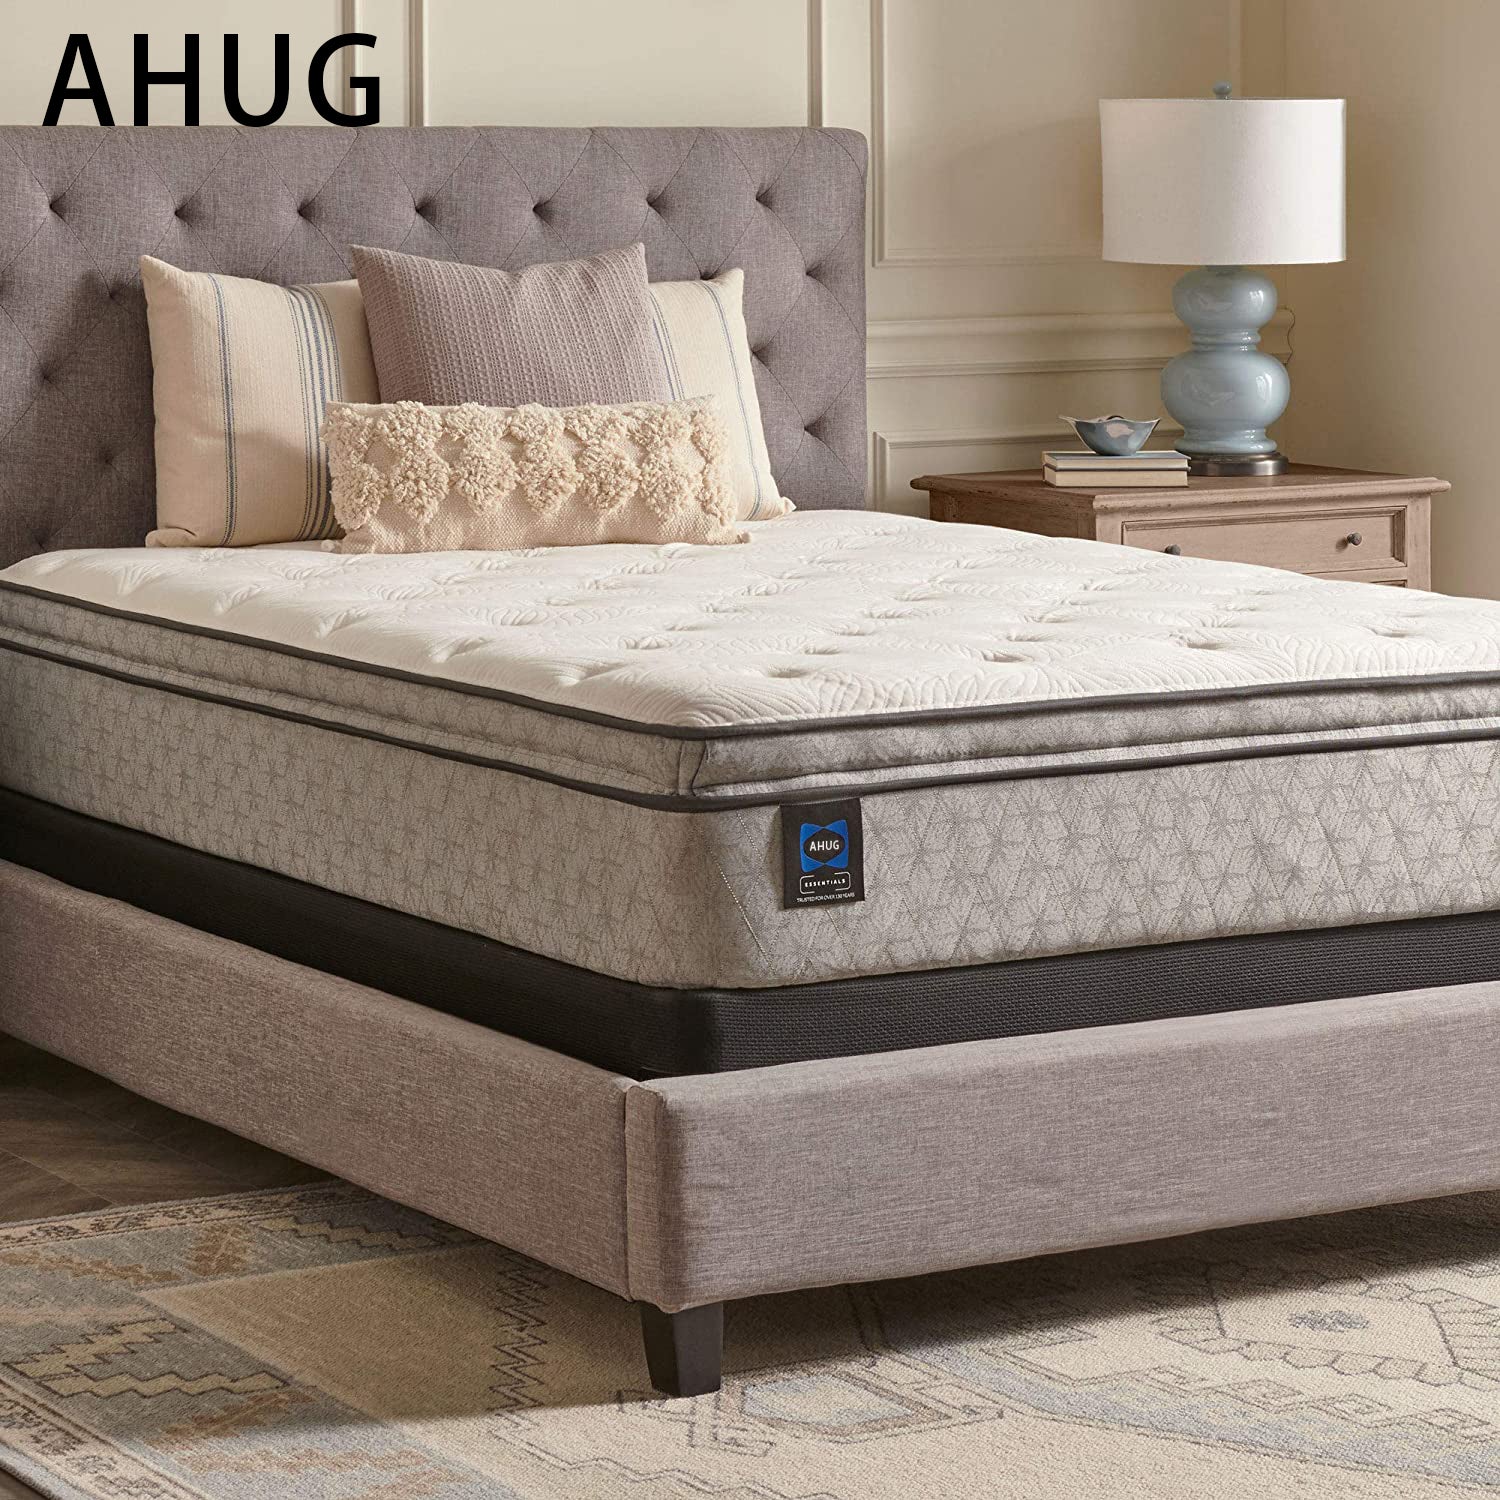 AHUG Essentials Spring Winter Green Euro Pillowtop Soft Feel Mattress, Queen